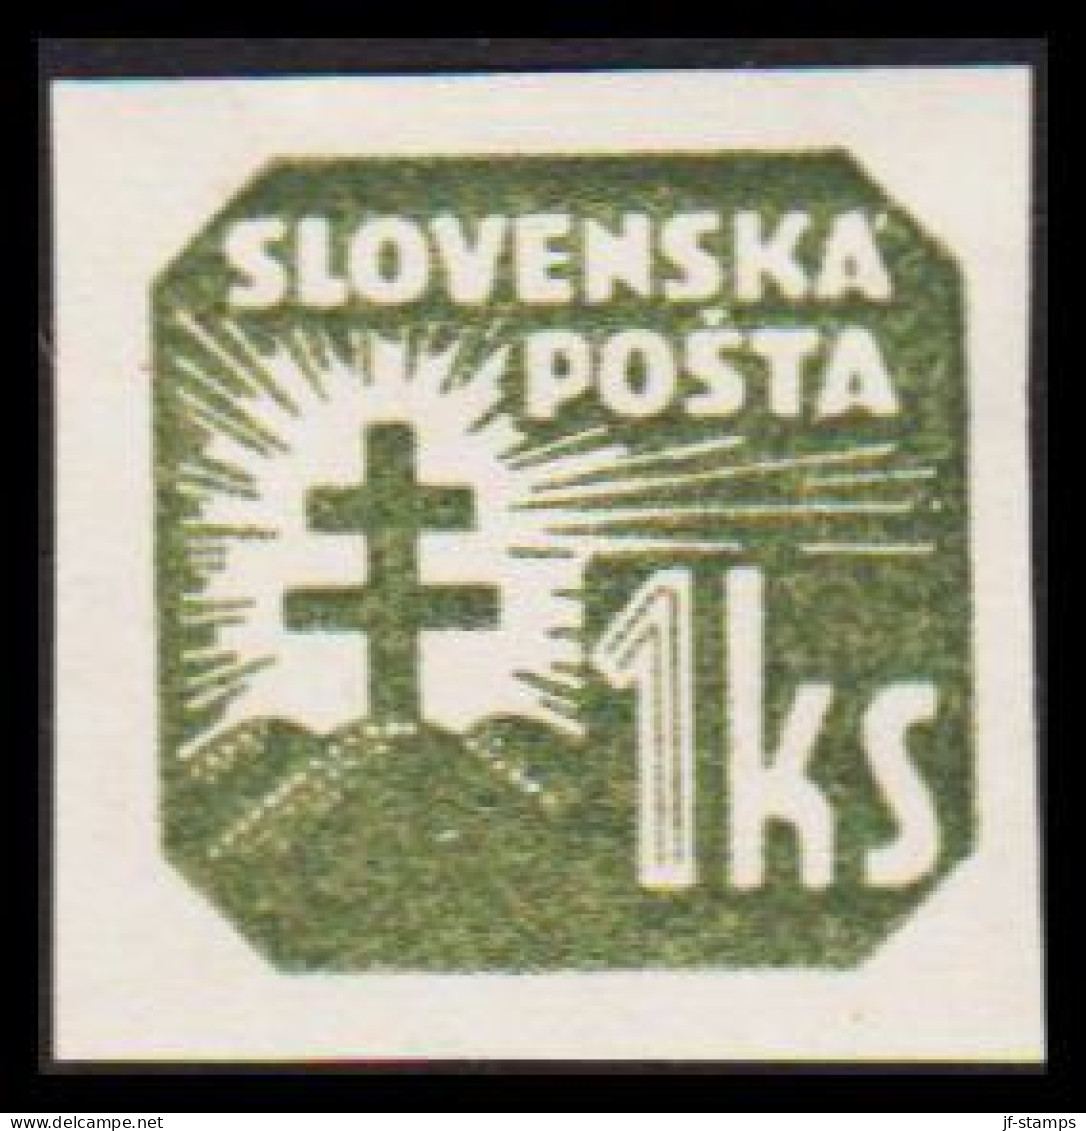 1939. SLOVENSKO 1 Ks Newspaper Stamp, Hinged.  (Michel 65) - JF545961 - Ungebraucht